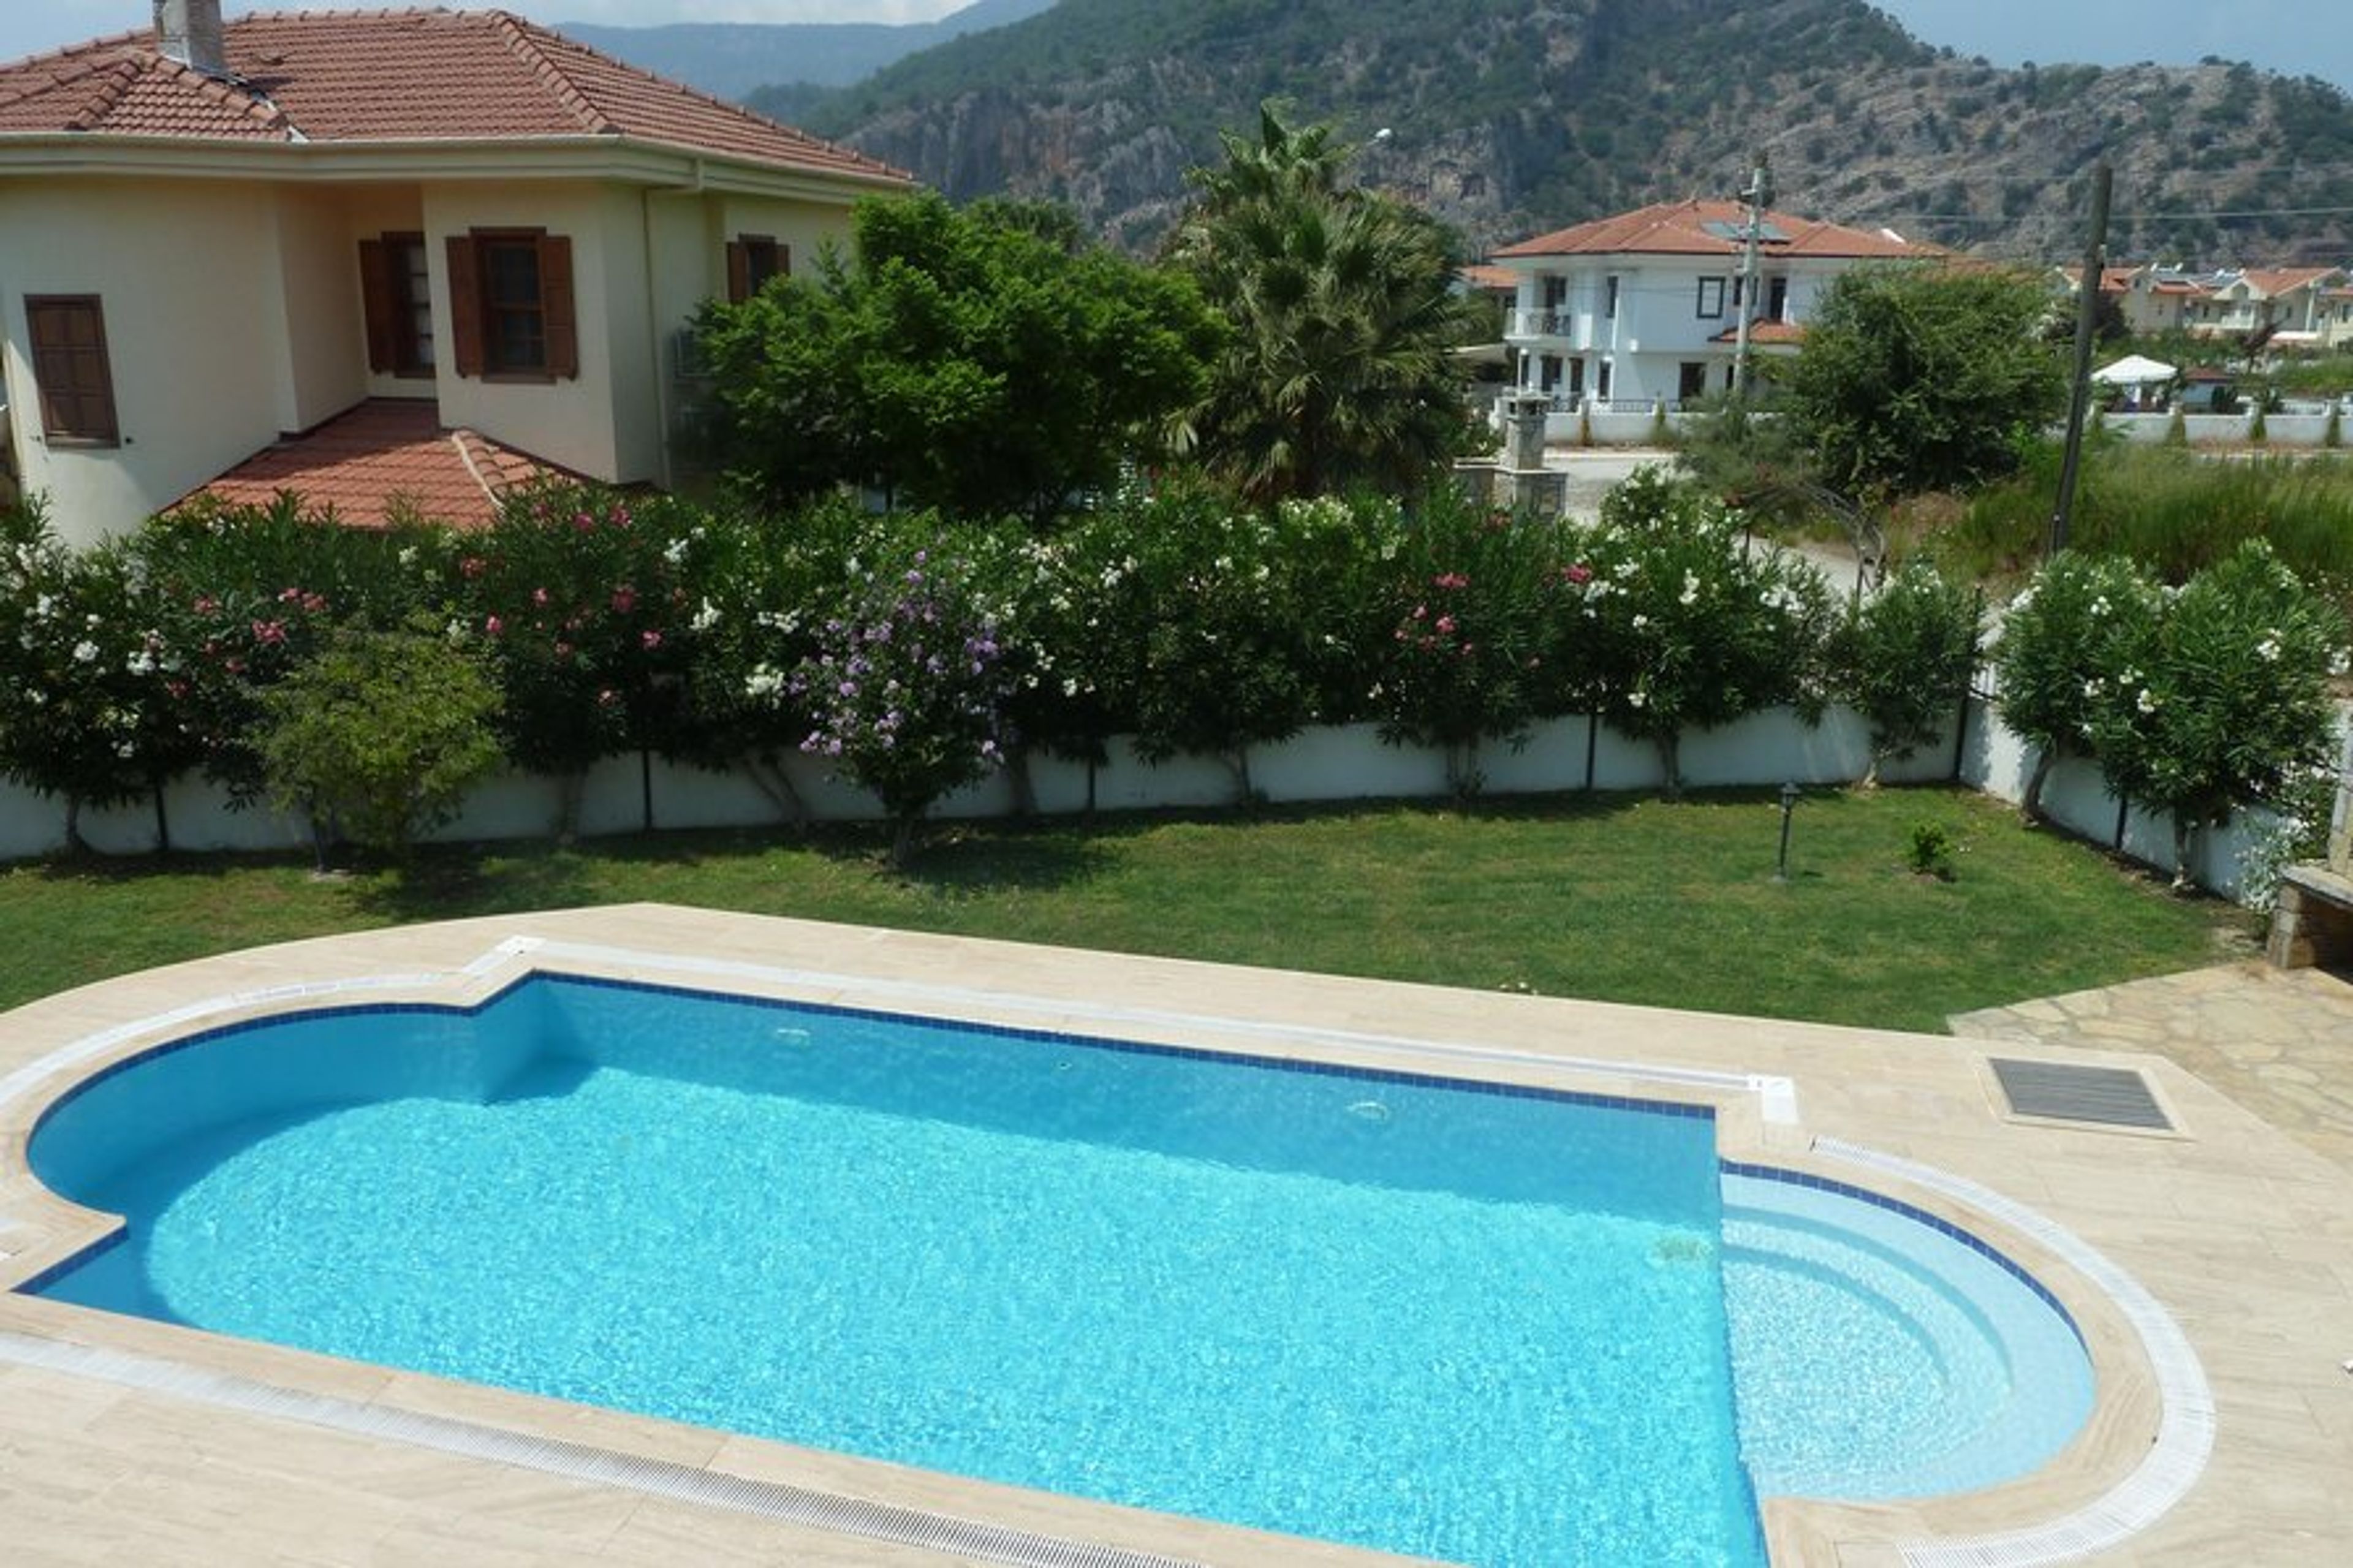 Villa Huzur - View of Pool